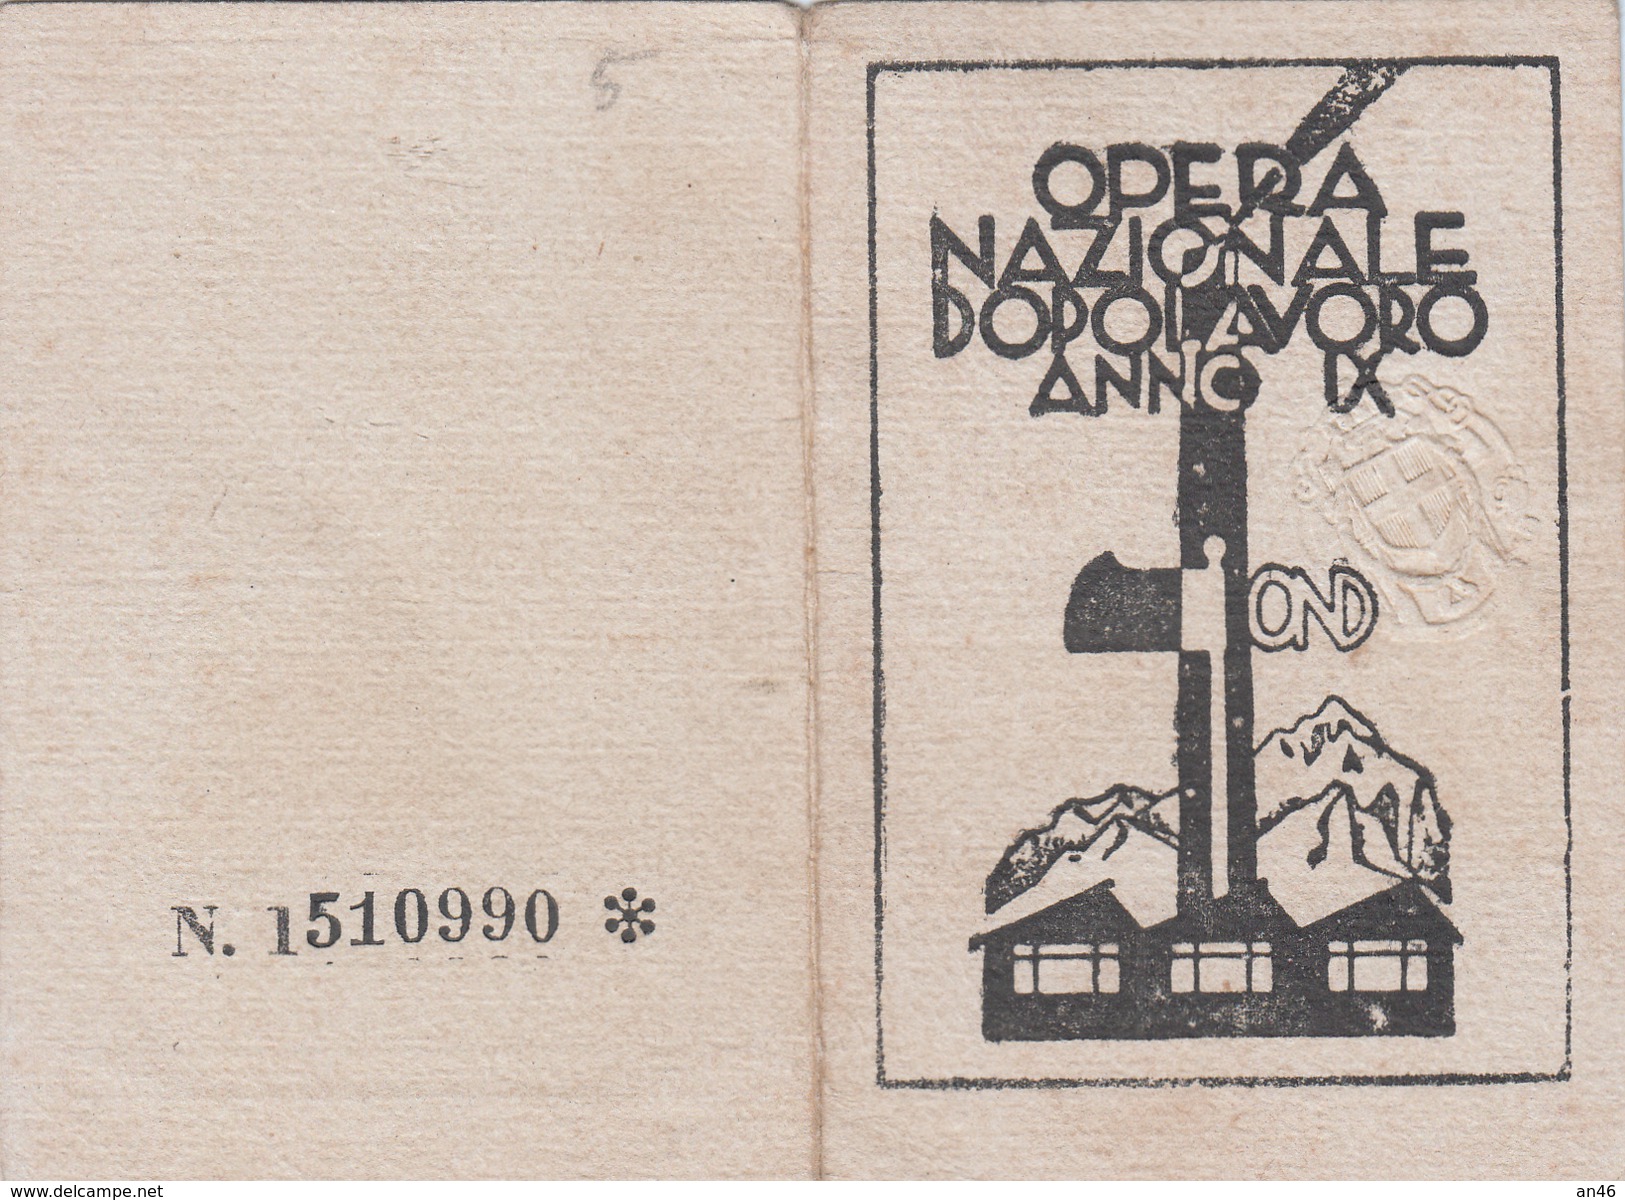 TESSERA-OND-OPERA NAZIONALE DOPOLAVORO ANNO IX DIRICONOSCIMENTO PER L'ANNO 1931- STEMMA IN RILIEVO-OTTIMA CONSERVAZIONE- - Advertising